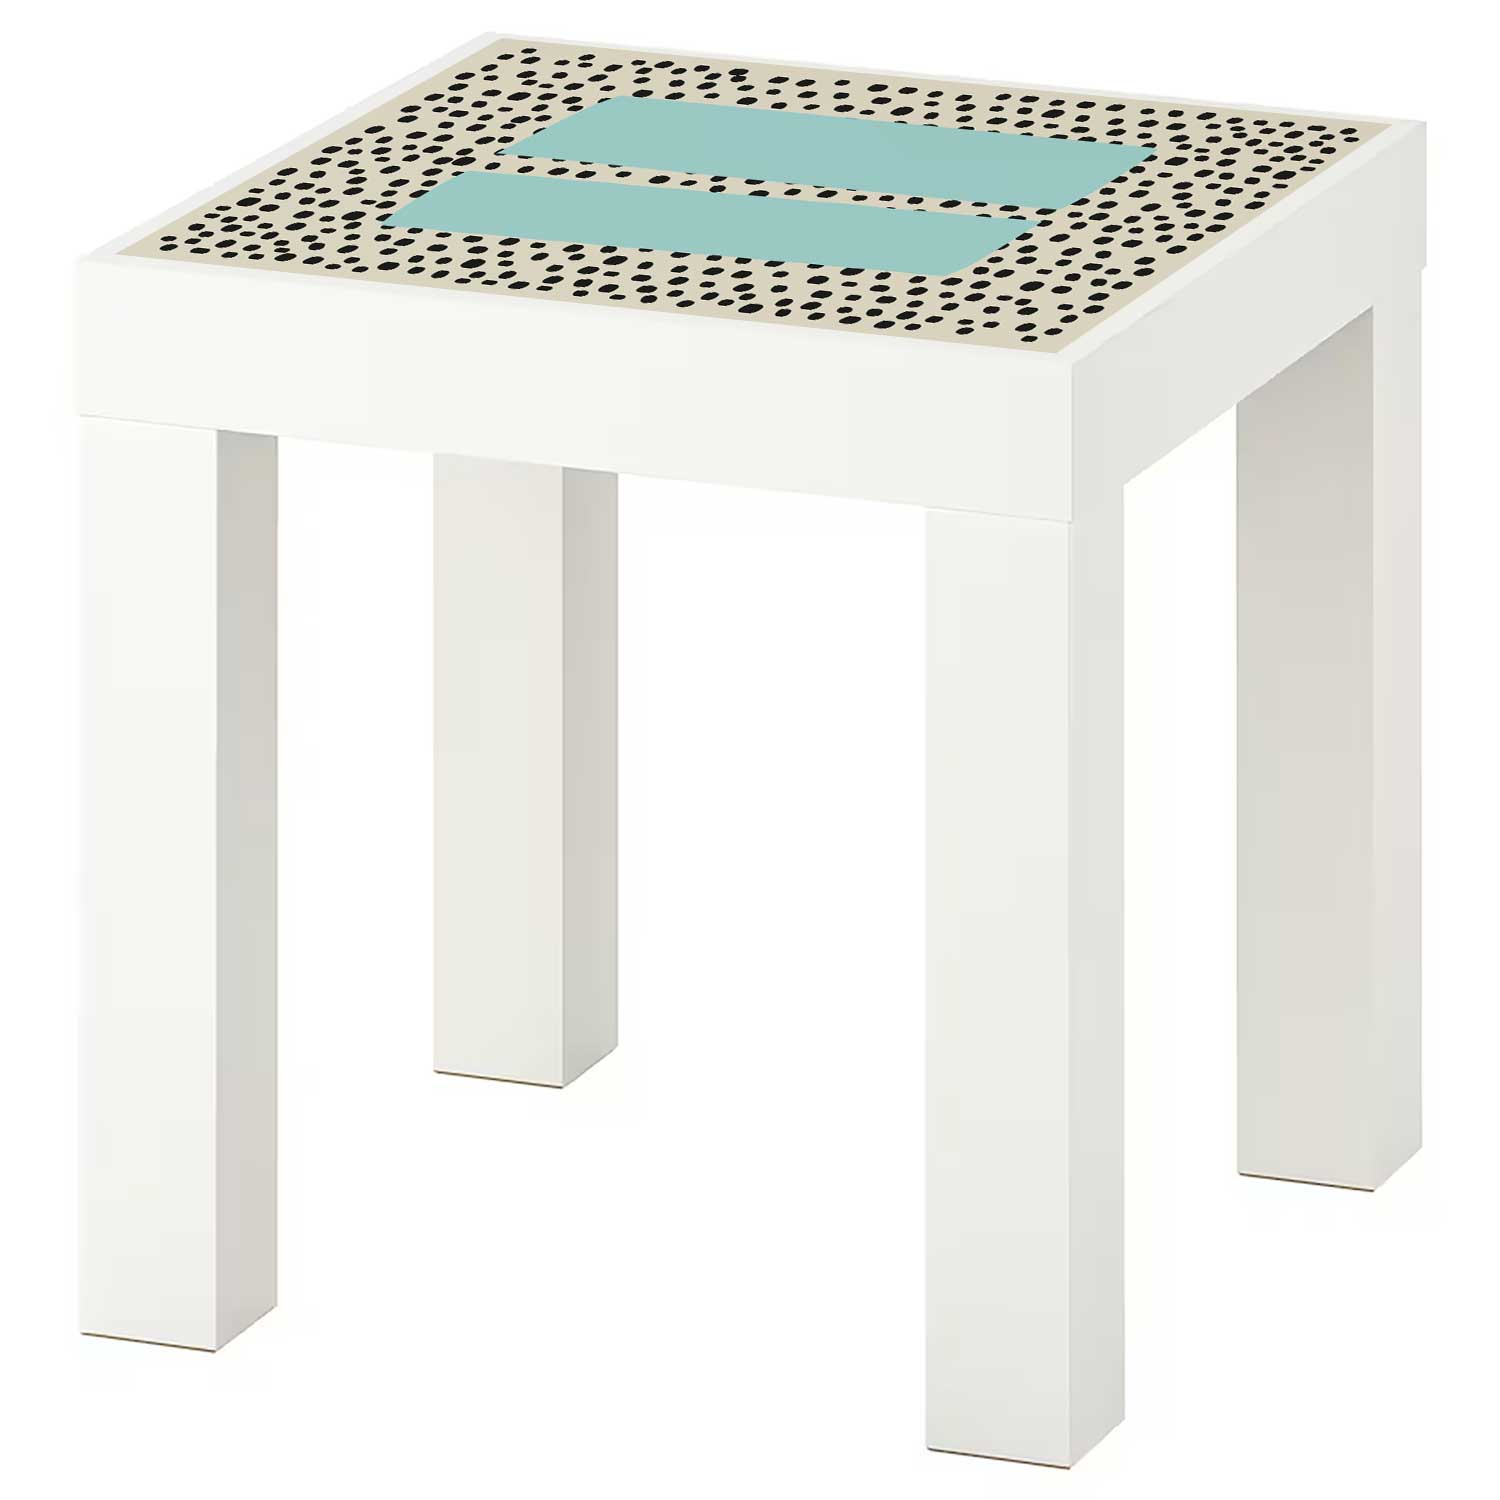 Möbelfolie für IKEA Lack Tisch 35x35 cm 'Pünktchen'